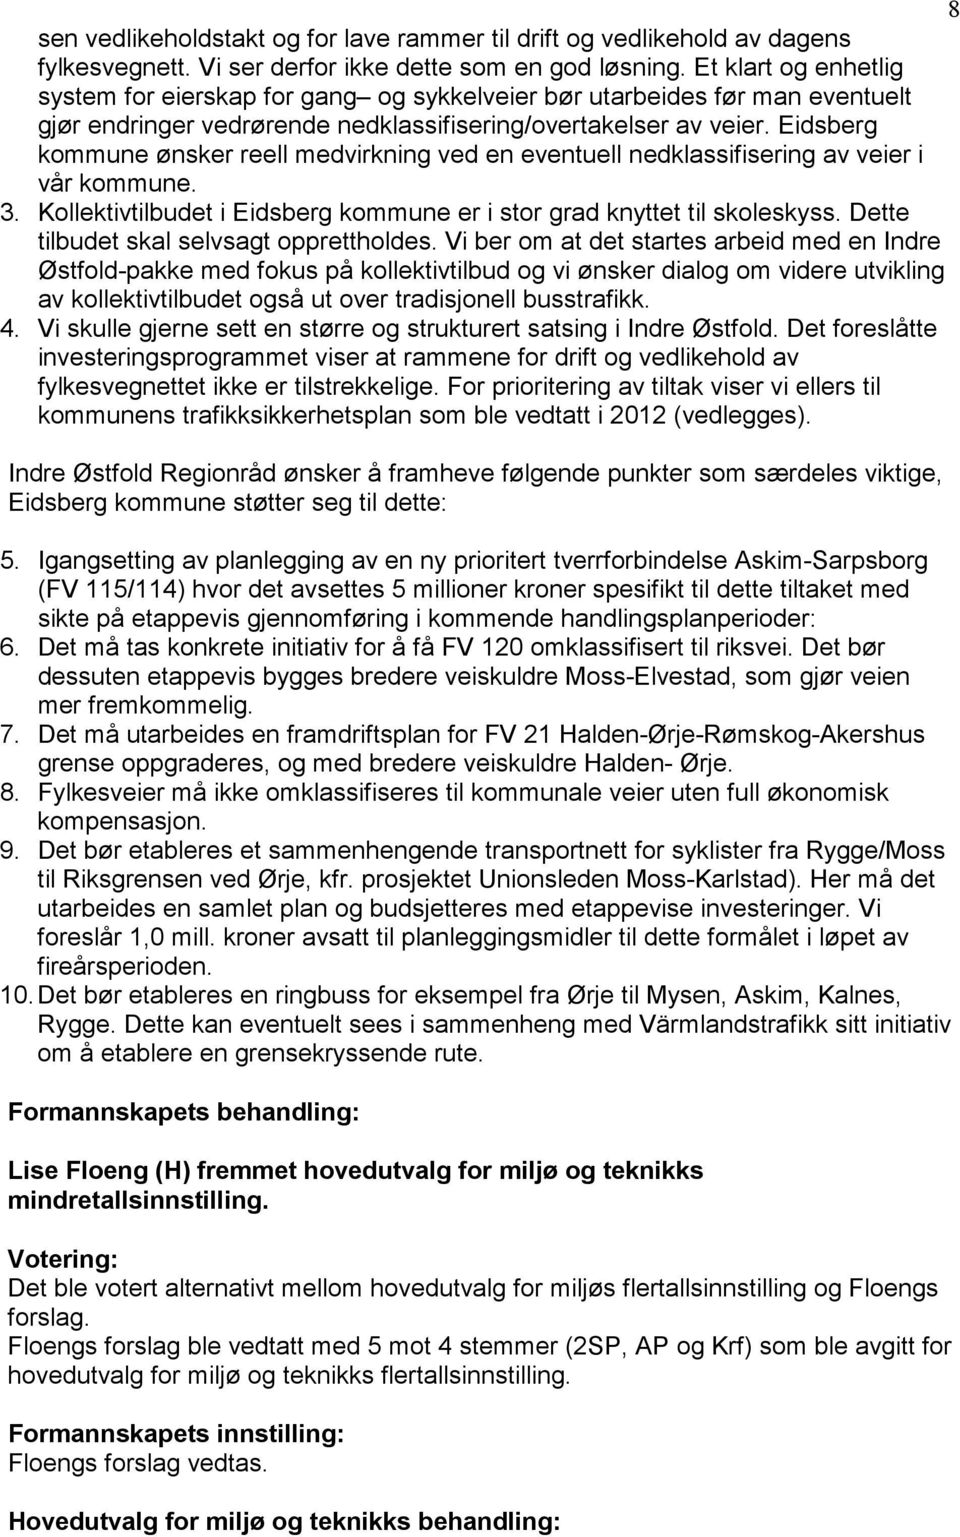 Eidsberg kommune ønsker reell medvirkning ved en eventuell nedklassifisering av veier i vår kommune. 3. Kollektivtilbudet i Eidsberg kommune er i stor grad knyttet til skoleskyss.